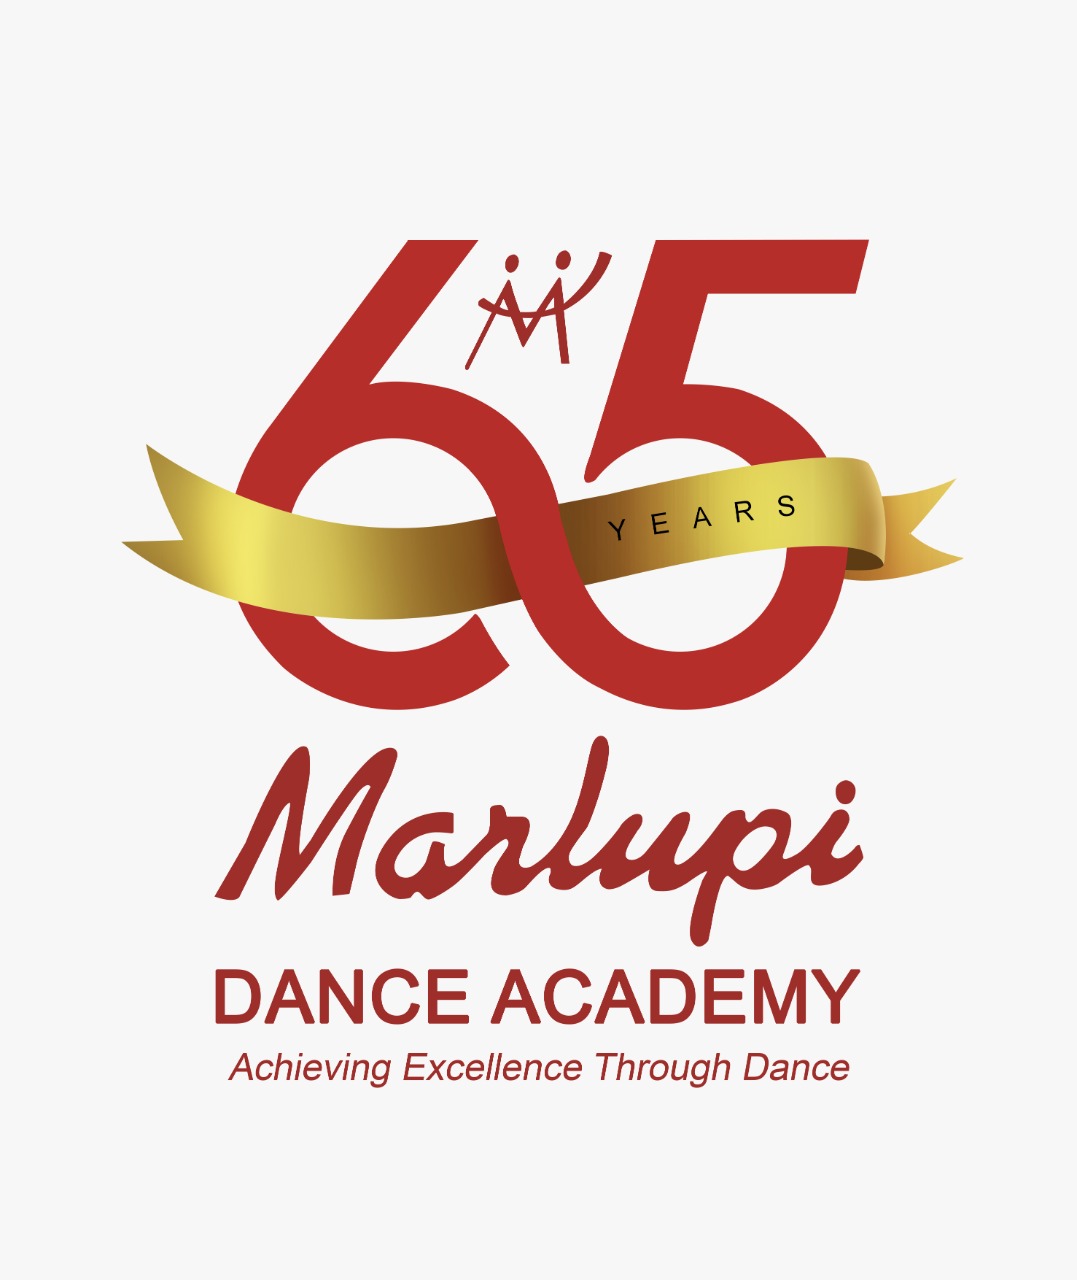 Marlupi Dance Academy 65th years Anniversary